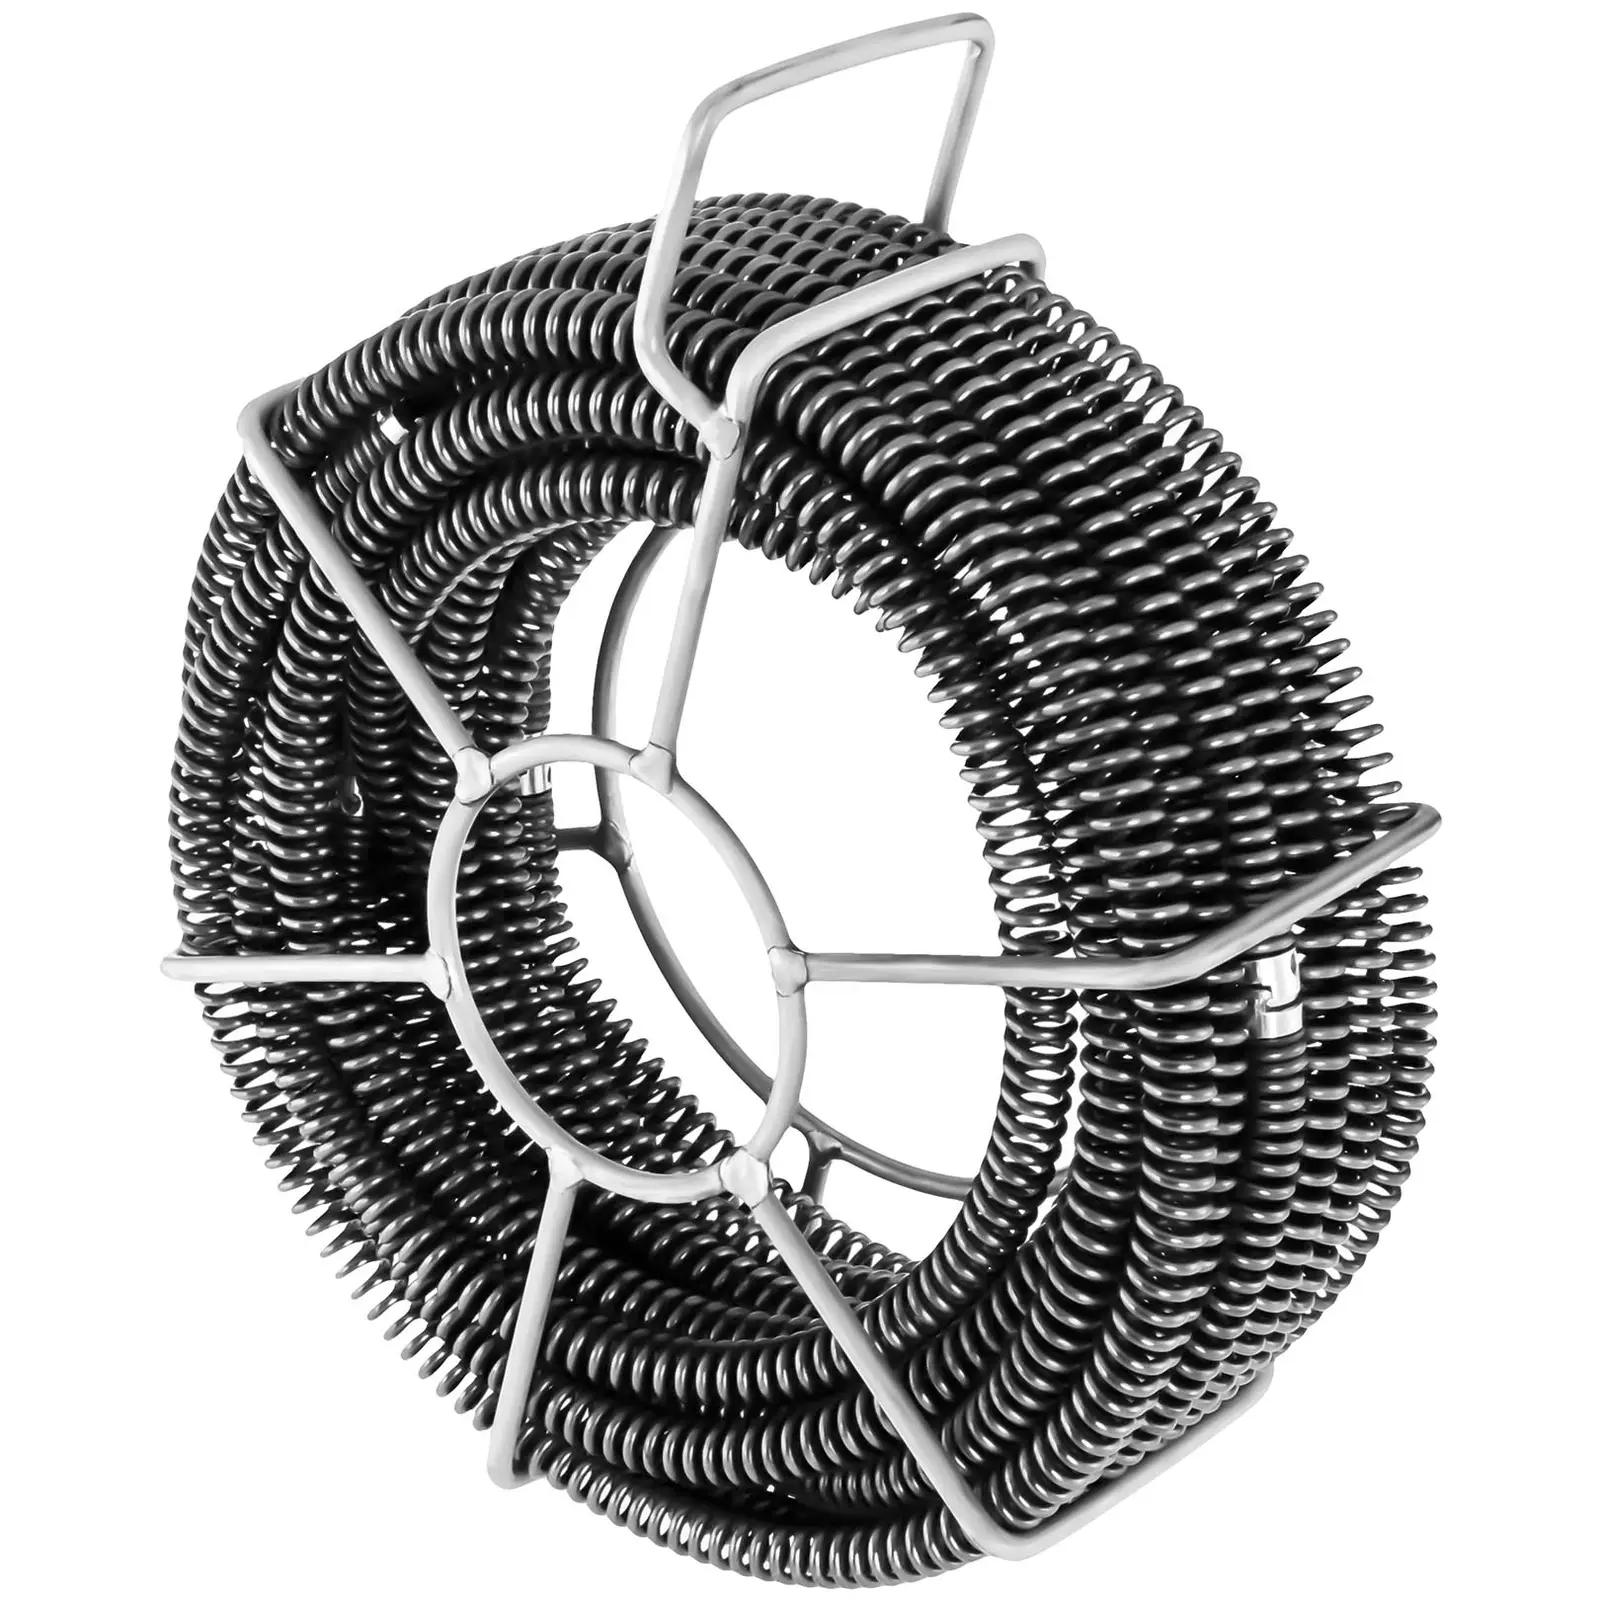 Vodovodni zmijski kabeli - Set od 6 x 2,45 m - Ø 16 mm